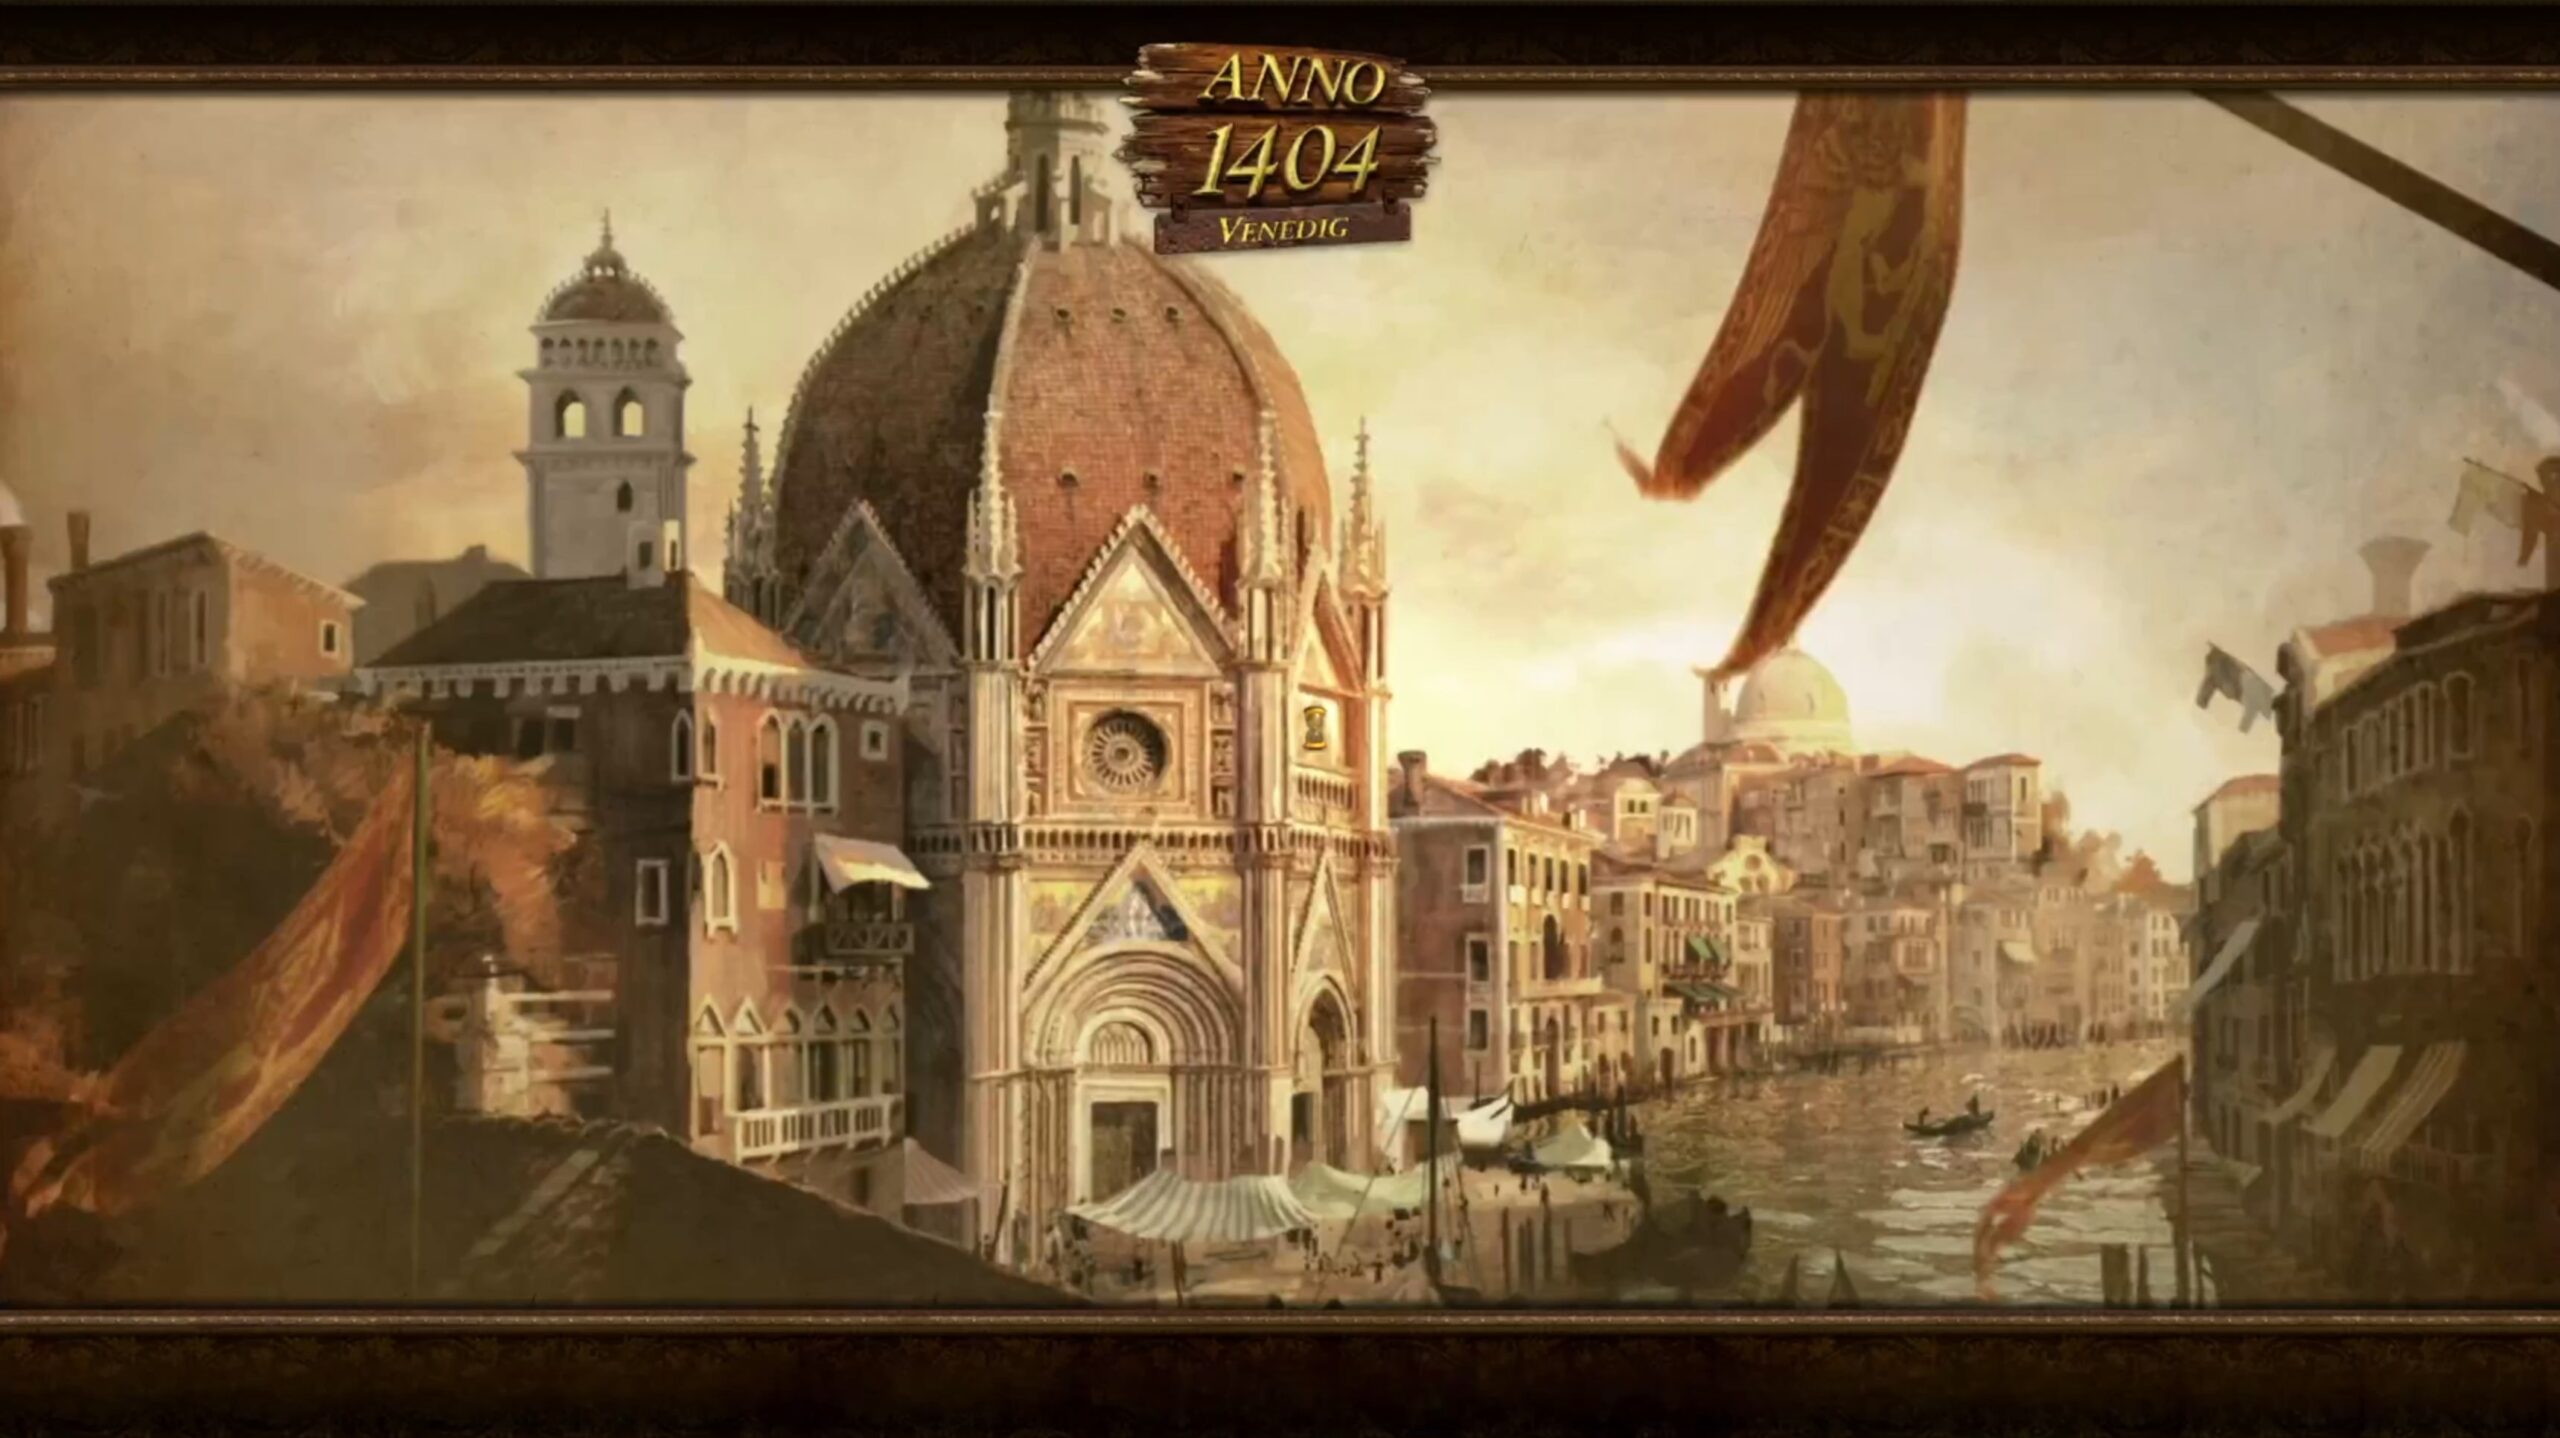 Anno 1404 History Edition enthält auch die Erweiterung Venedig